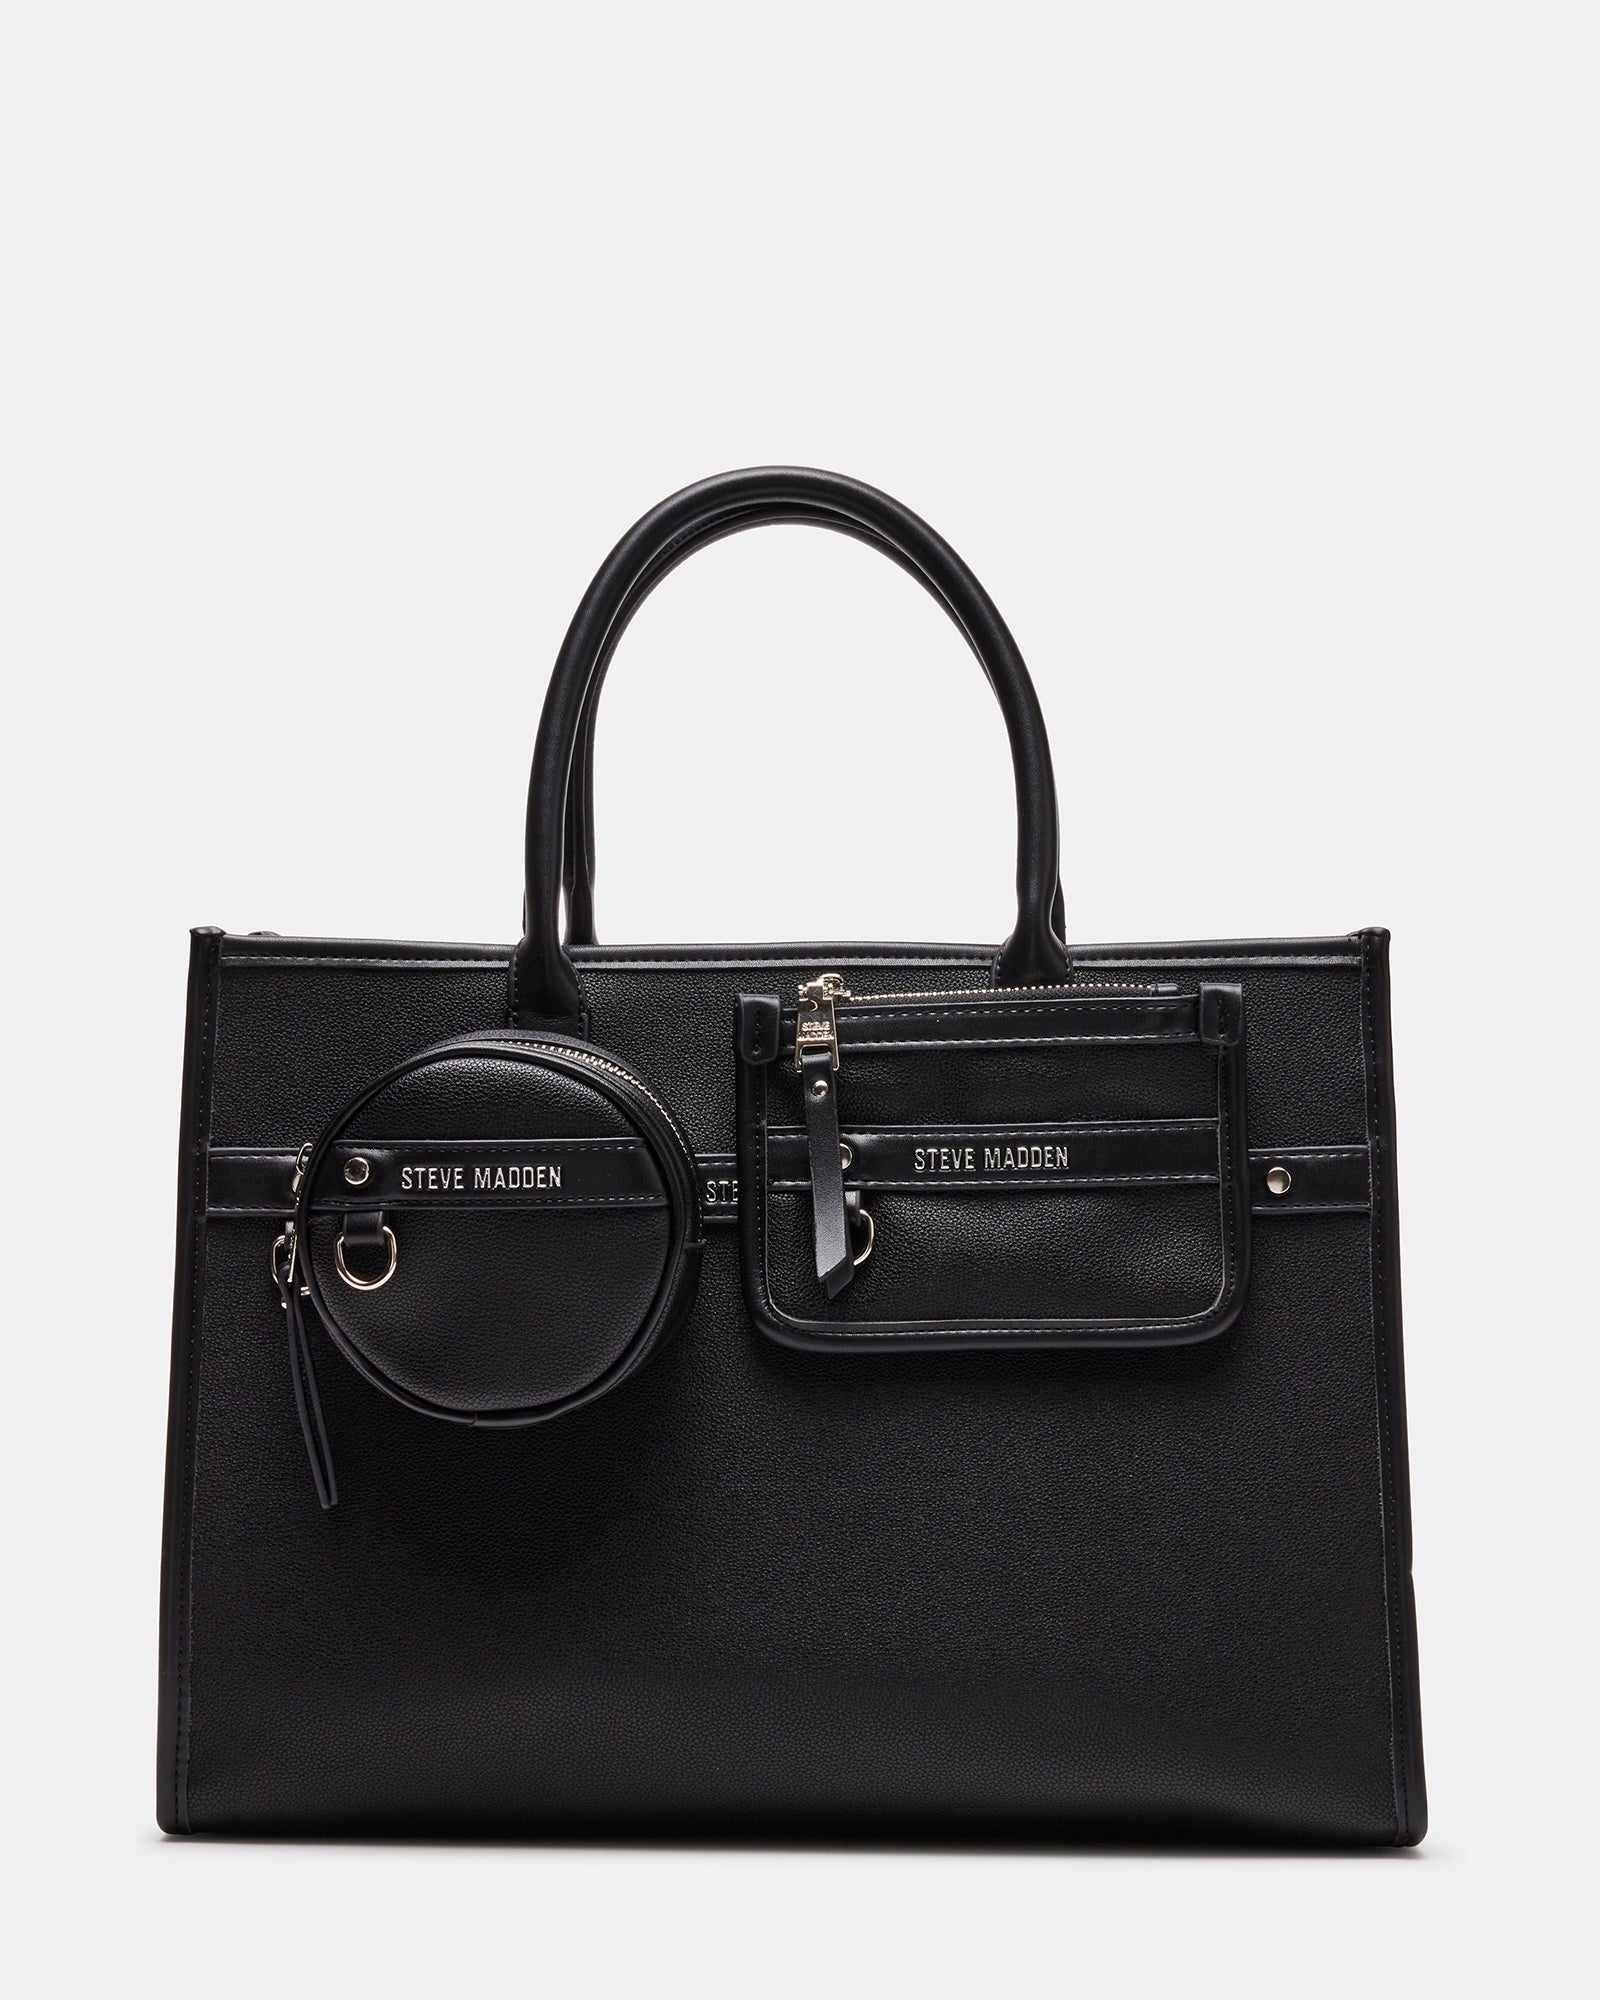 CHORD Black Bag Tote Bag  Women's Handbags – Steve Madden